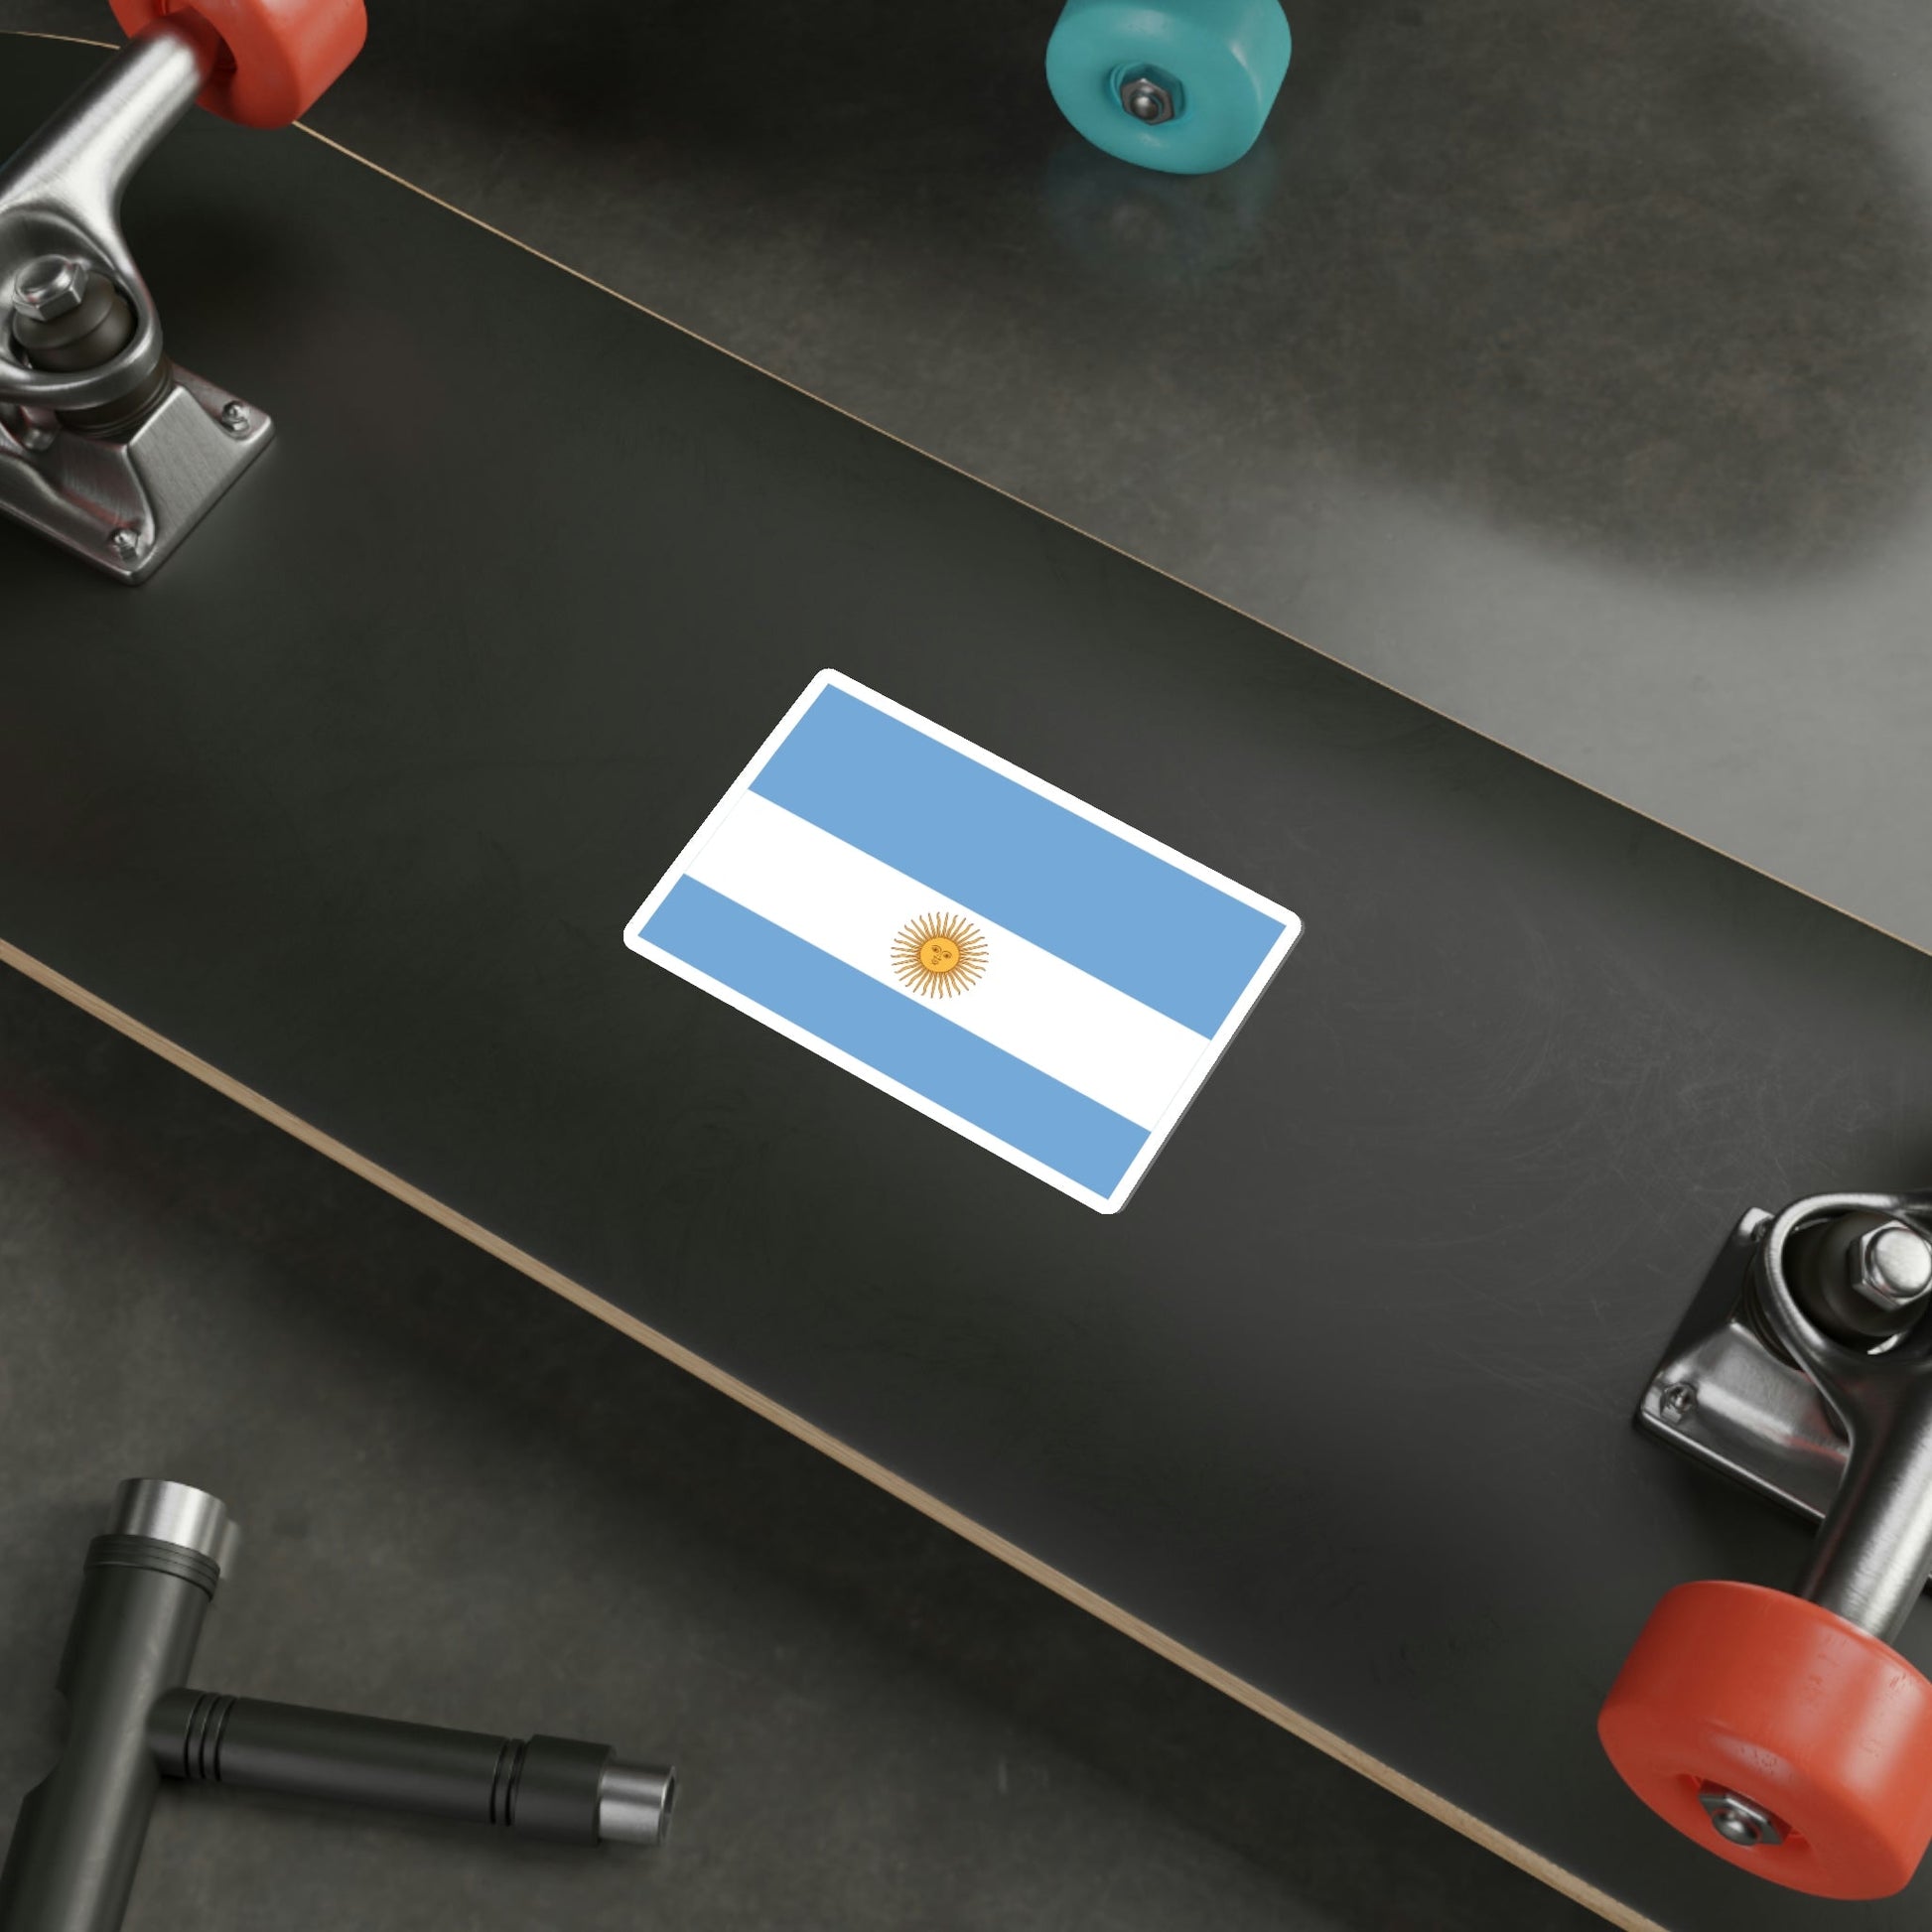 Flag de Marina Argentina 1818 STICKER Vinyl Die-Cut Decal-The Sticker Space